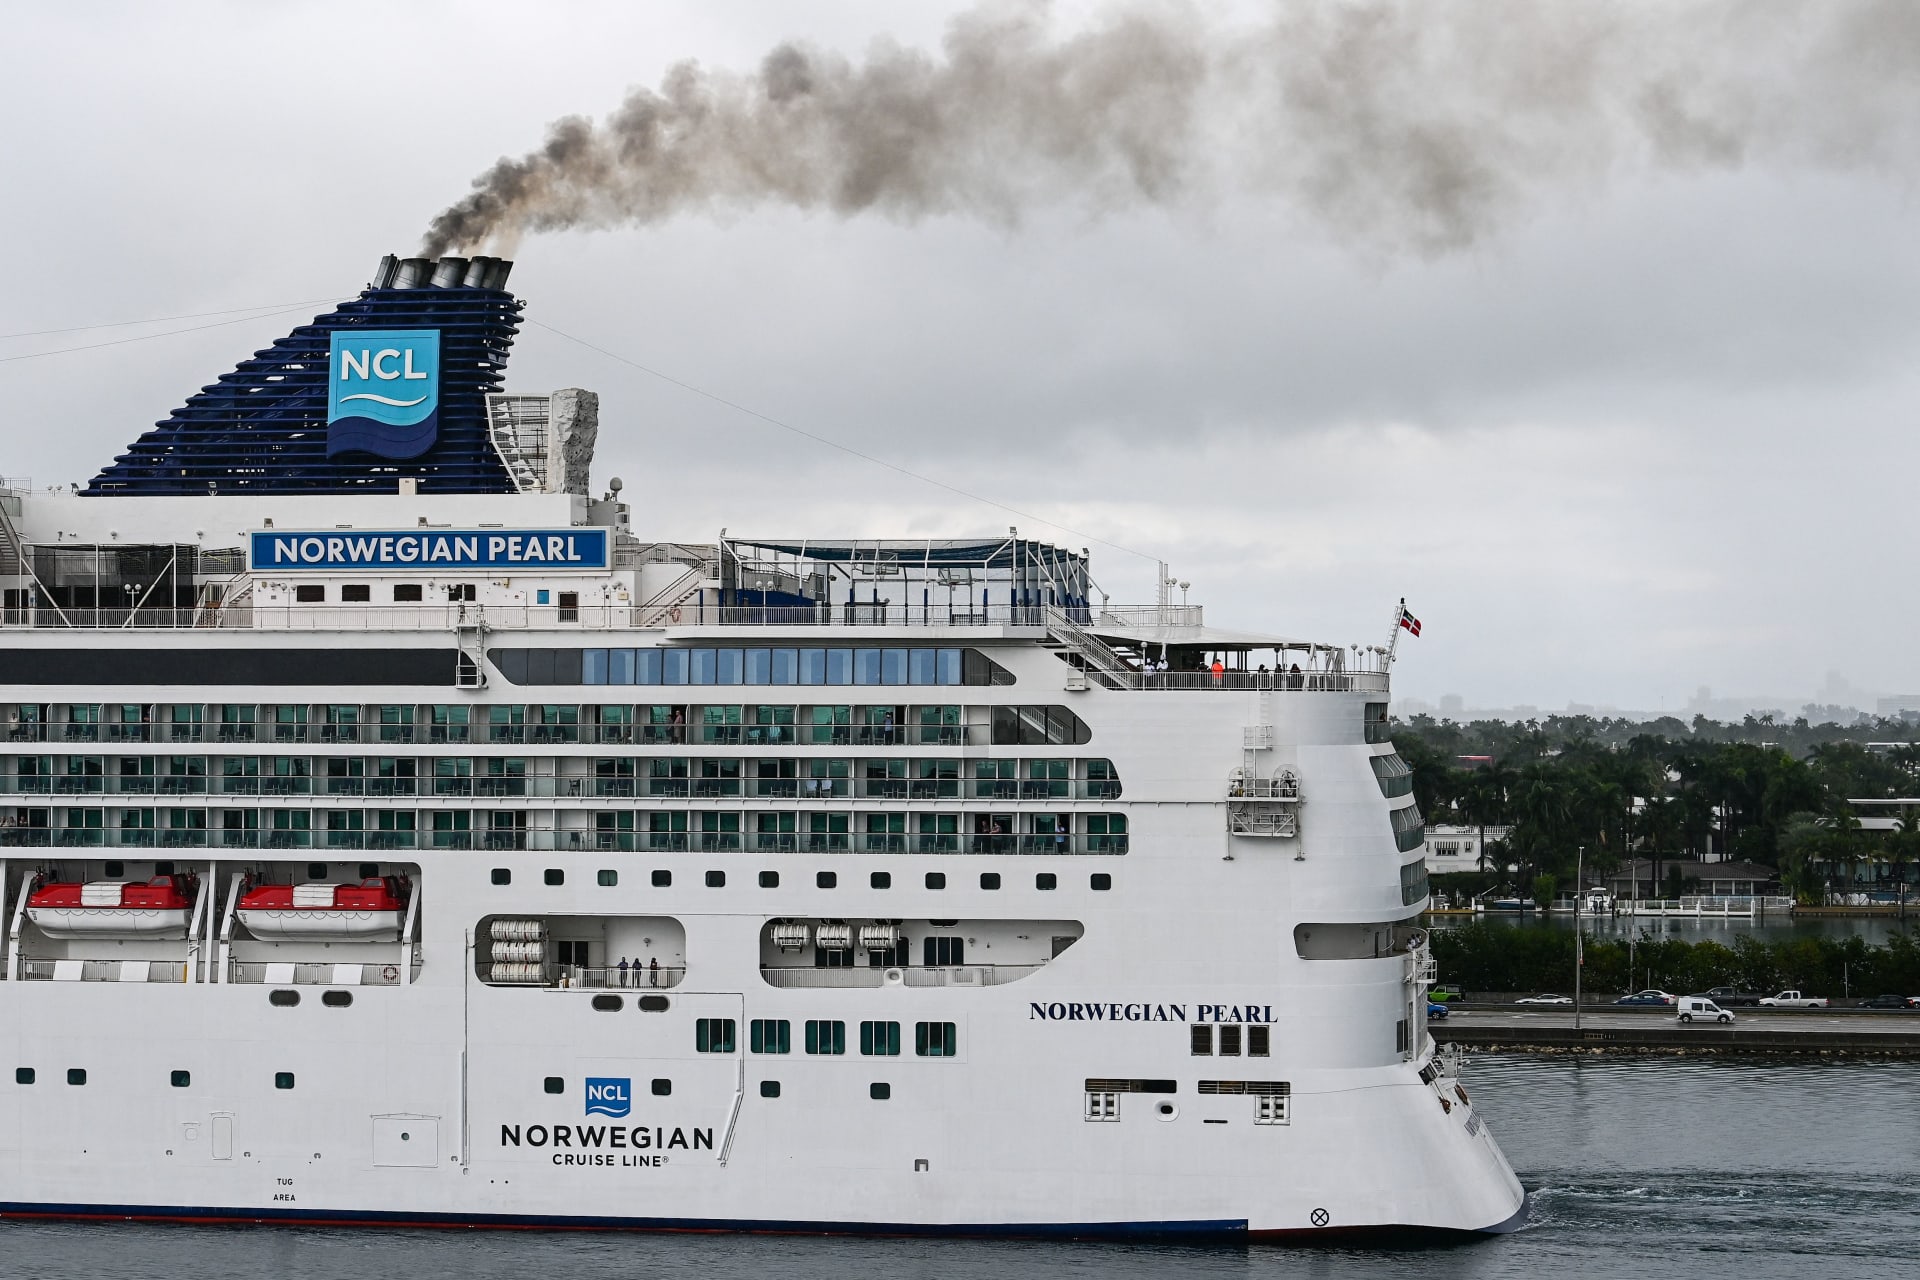 شركة "رويال كاريبيان" تلغي رحلات 4 سفن بسبب فيروس كورونا